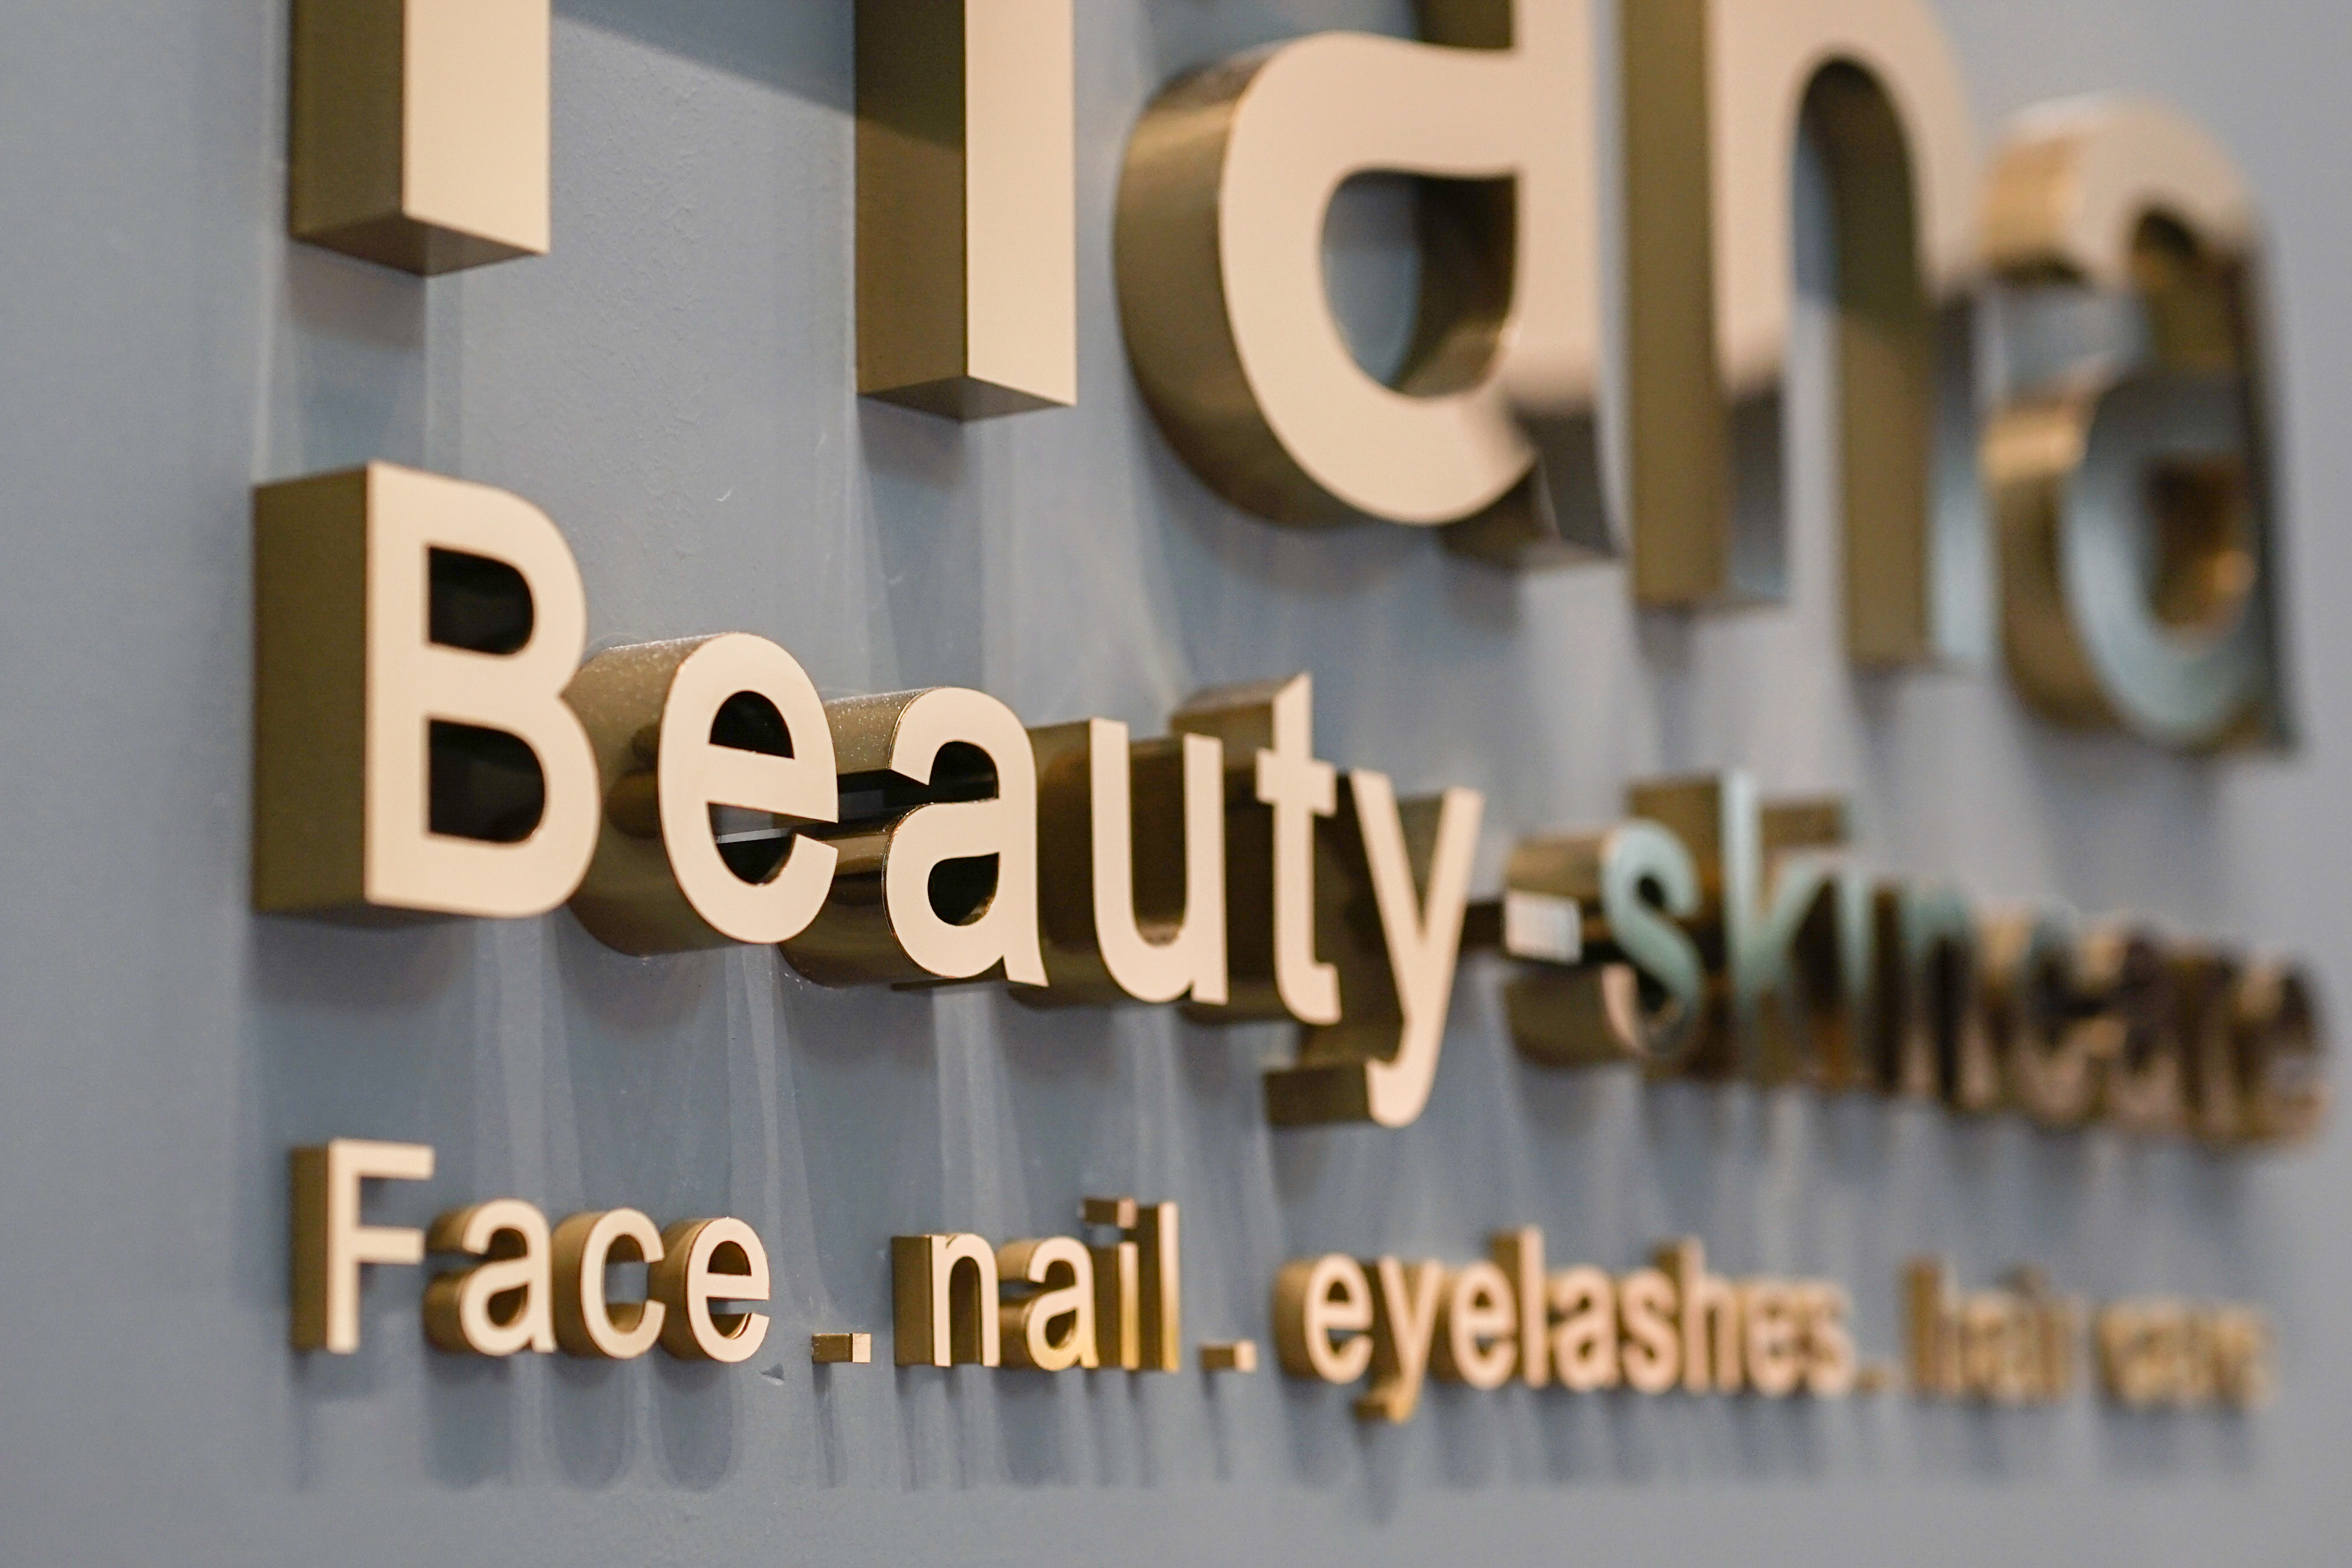 Hana Beauty Skincare